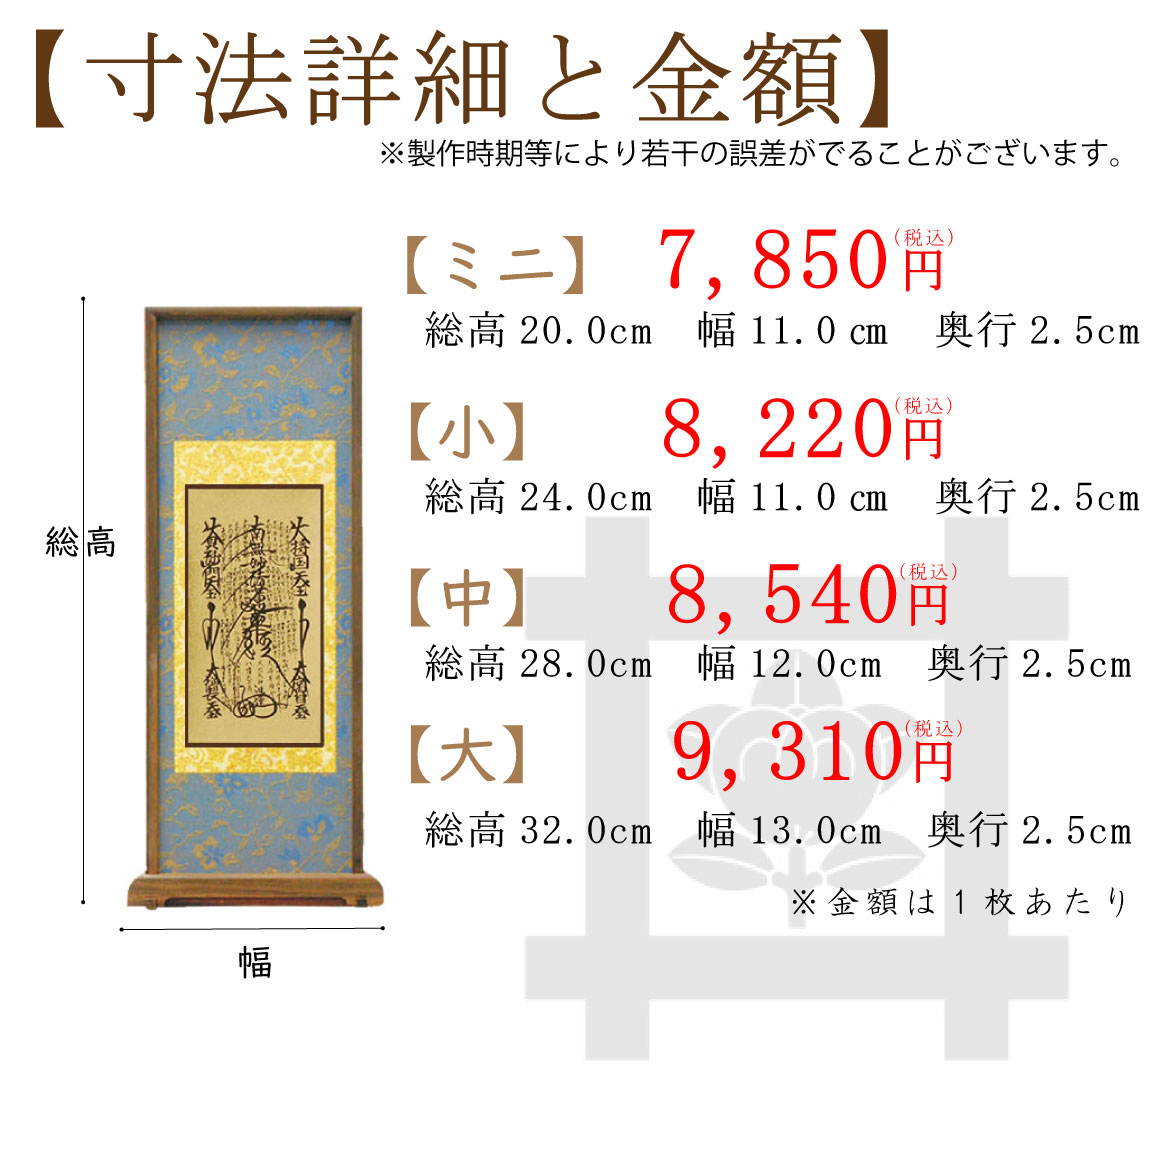 【高級素材】日蓮宗のスタンド式掛け軸のサイズと価格